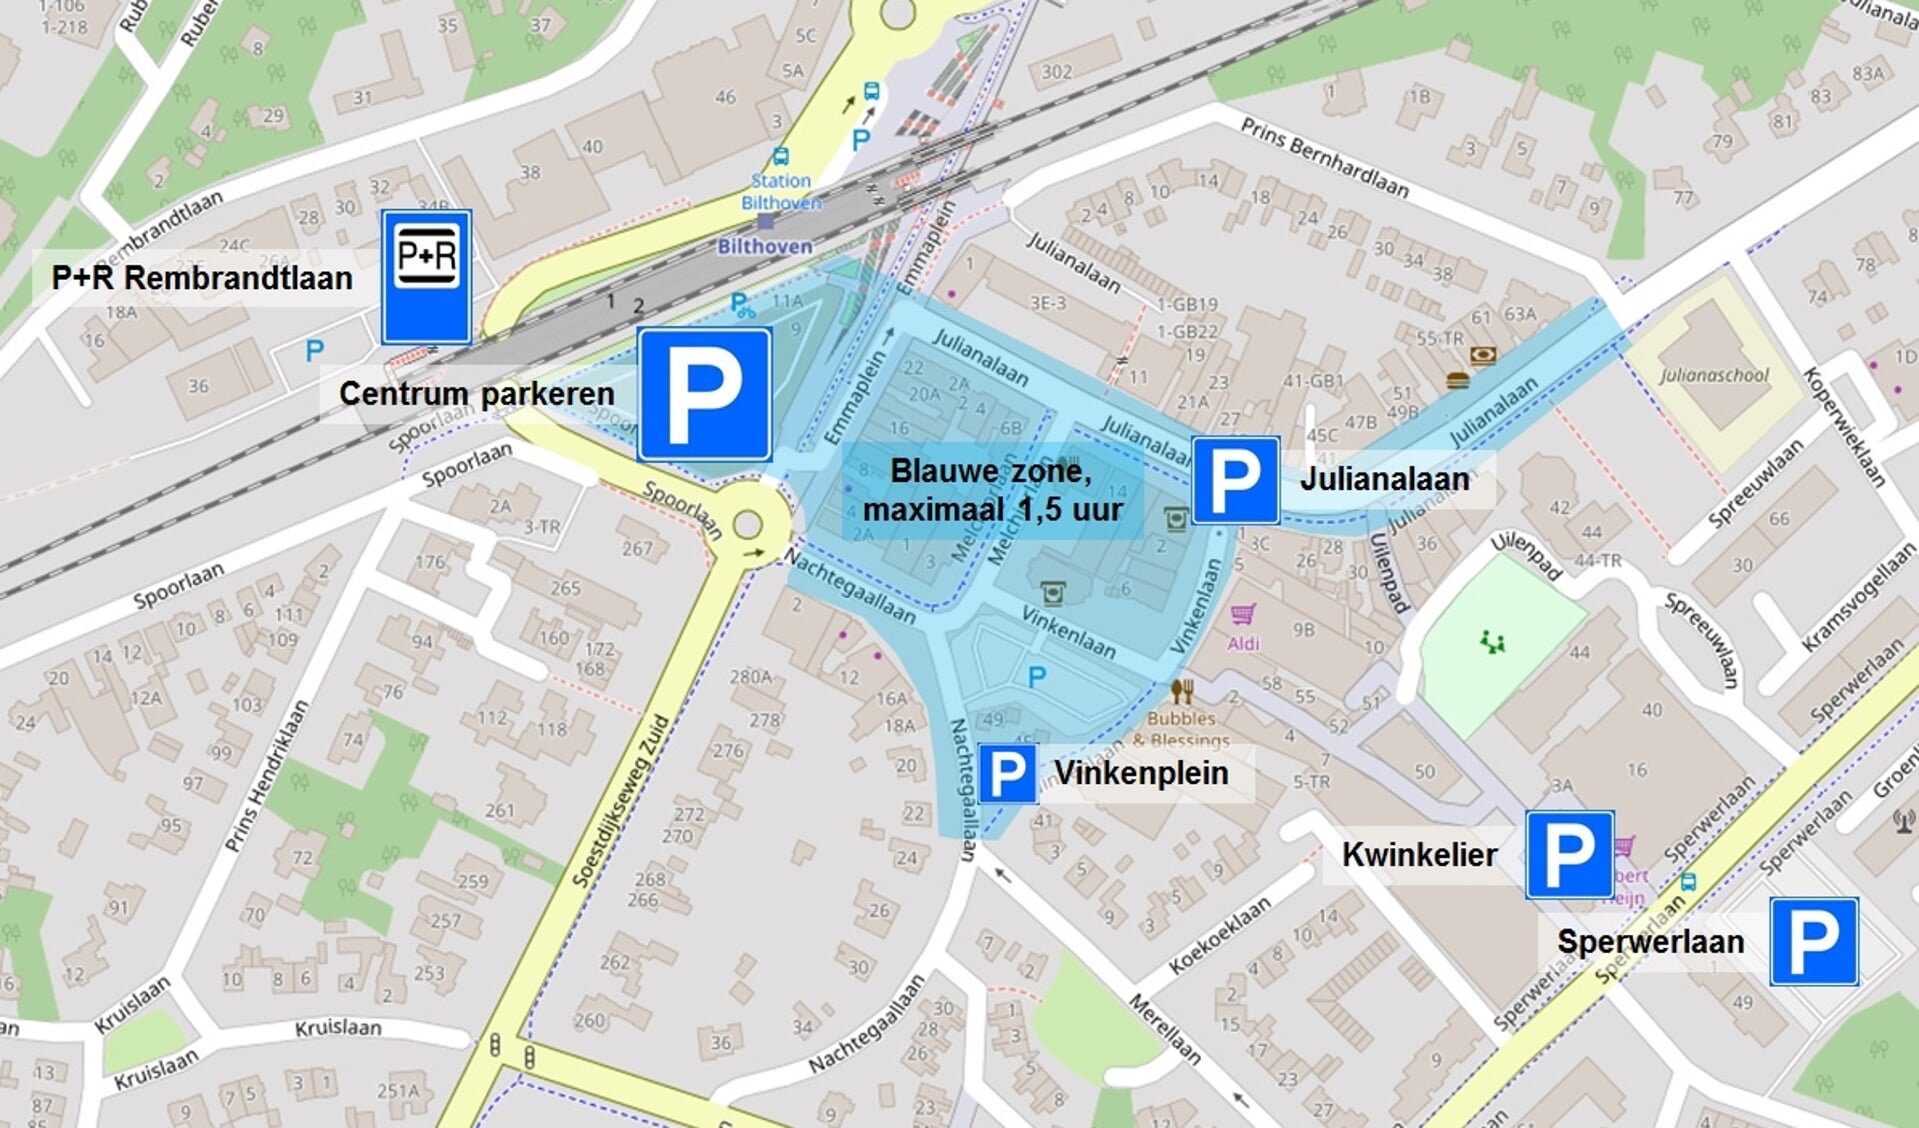 Zone maximaal 1,5 uur parkeren in Bilthoven.